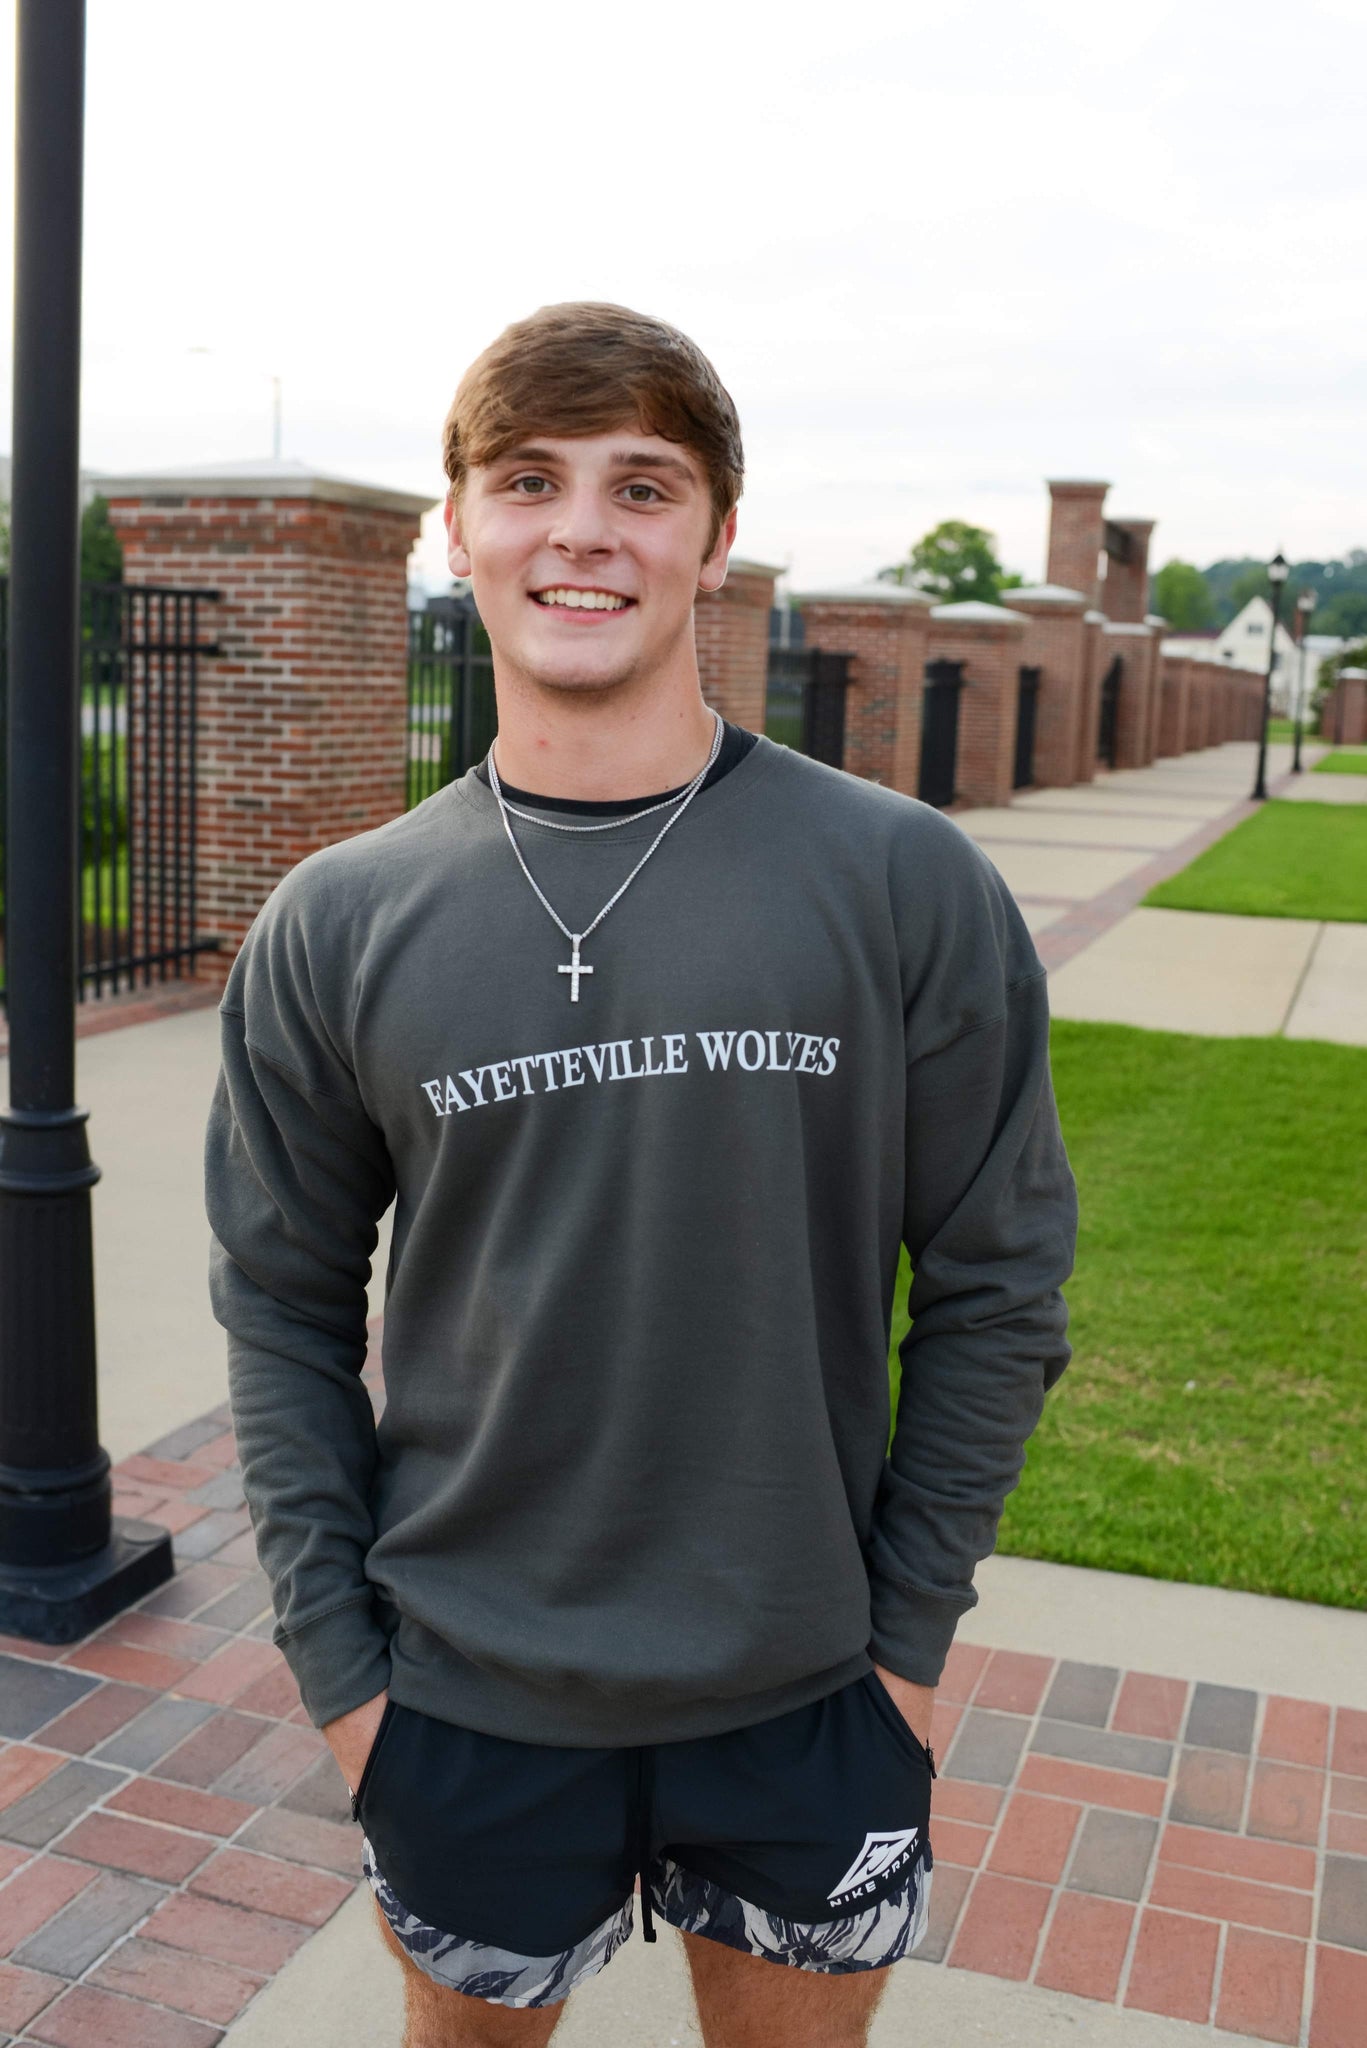 Fayetteville Wolves Sweatshirt